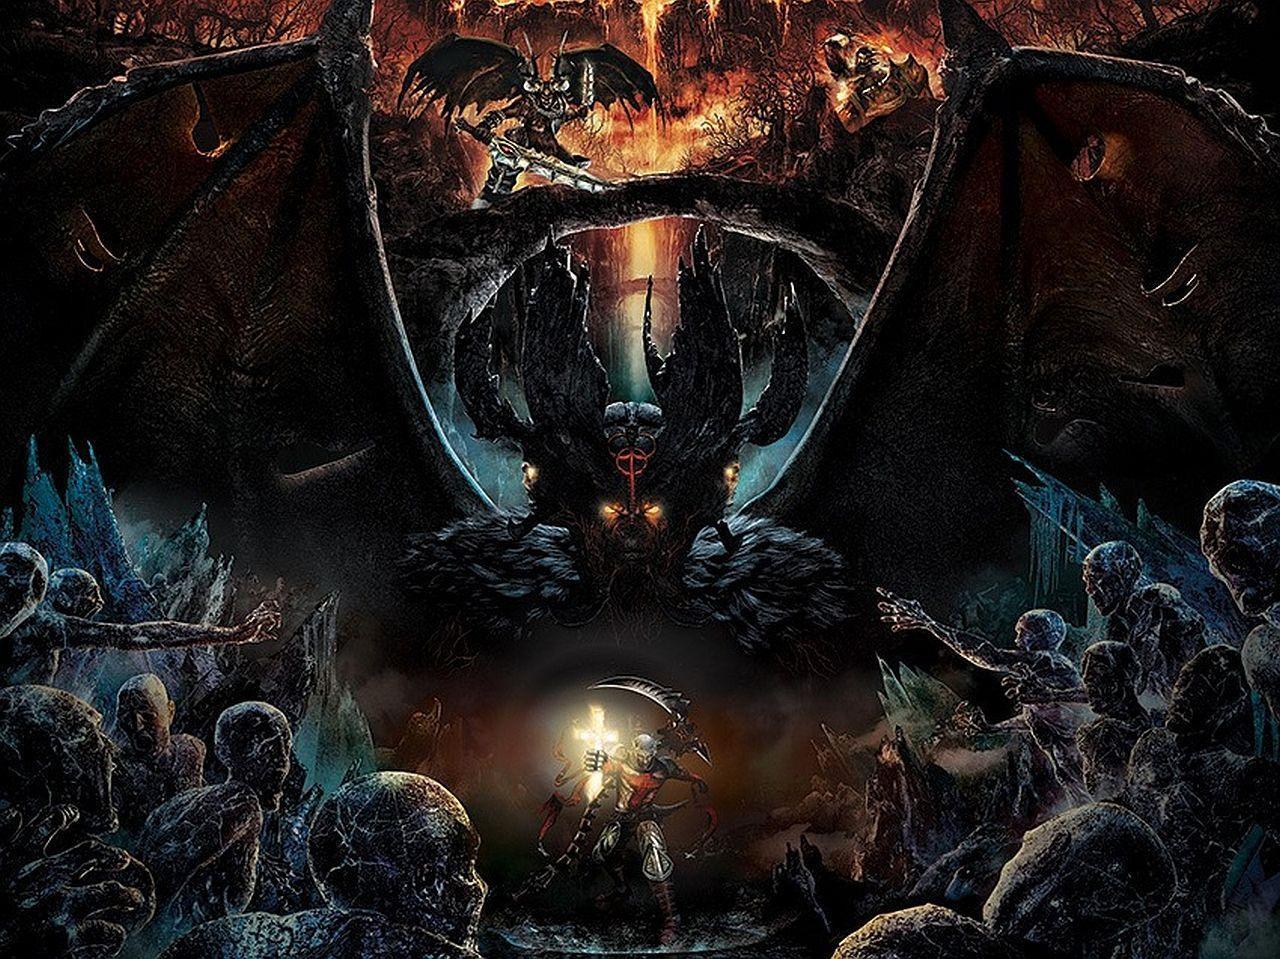 Dante's Inferno HD Wallpaper